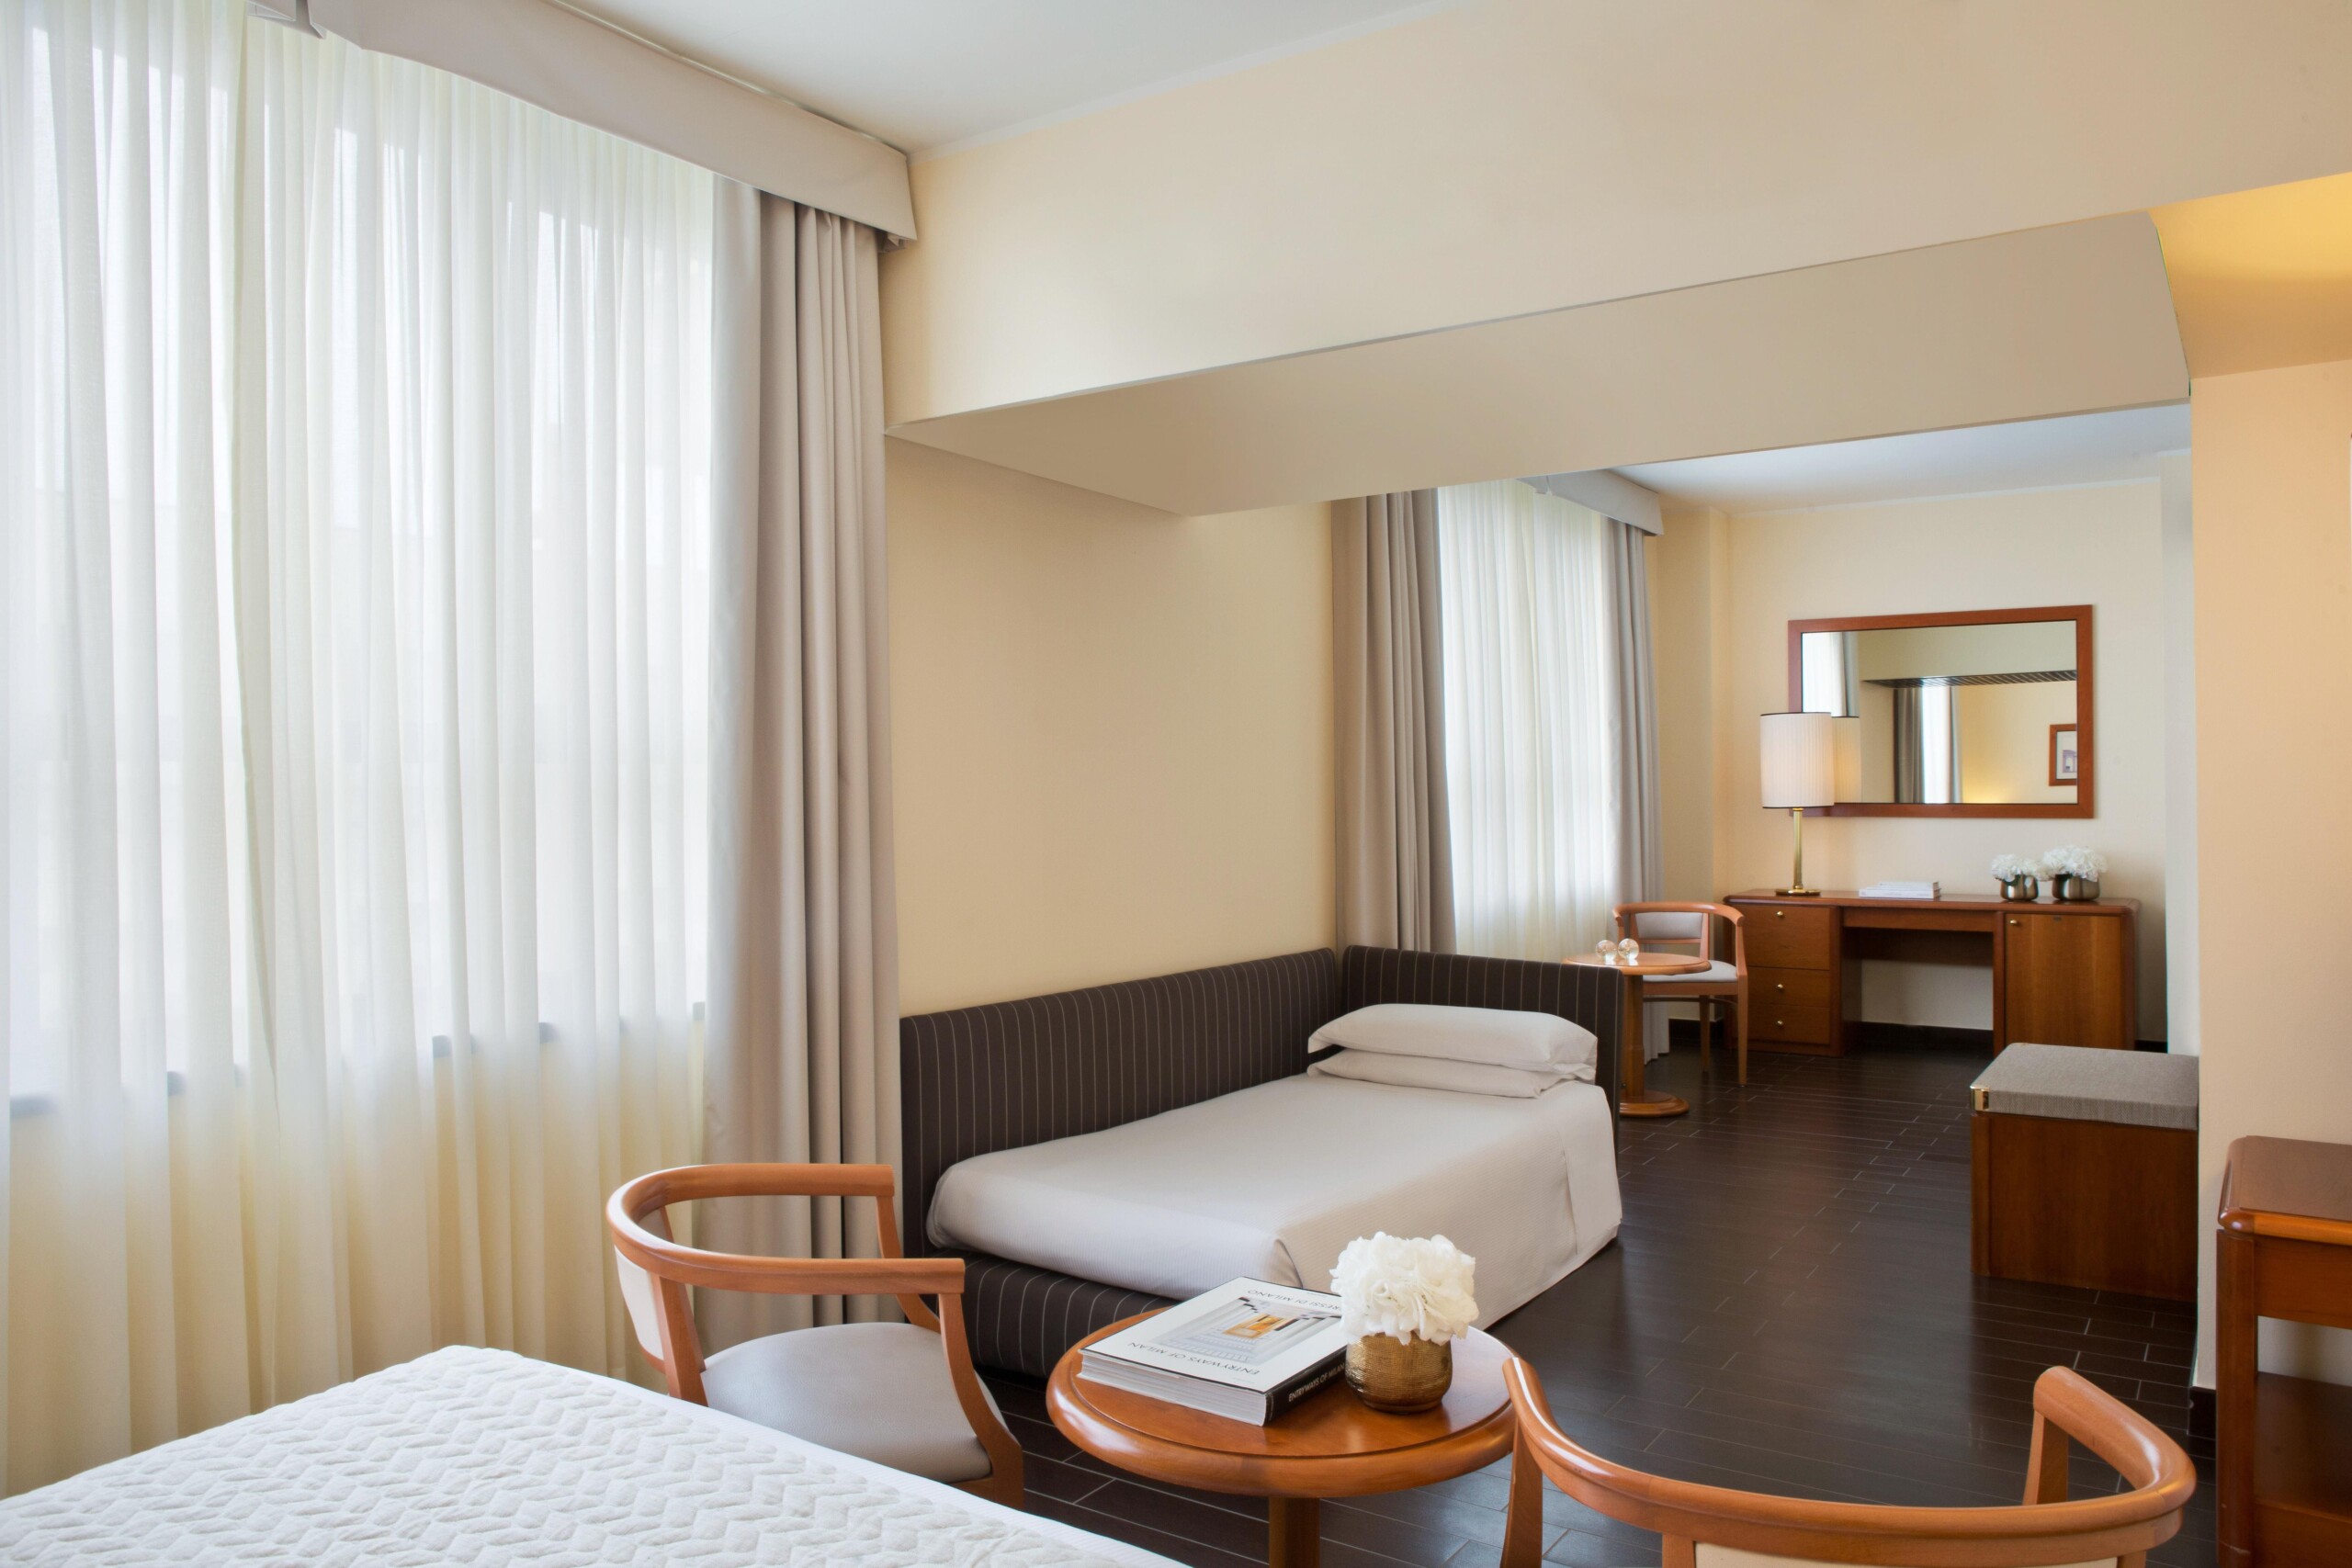 Onde se hospedar em Milão, hotéis e pousadas familiares: Starhotels Business Palace | Quarto do hotel Starhotels Business Palace | Conexão123